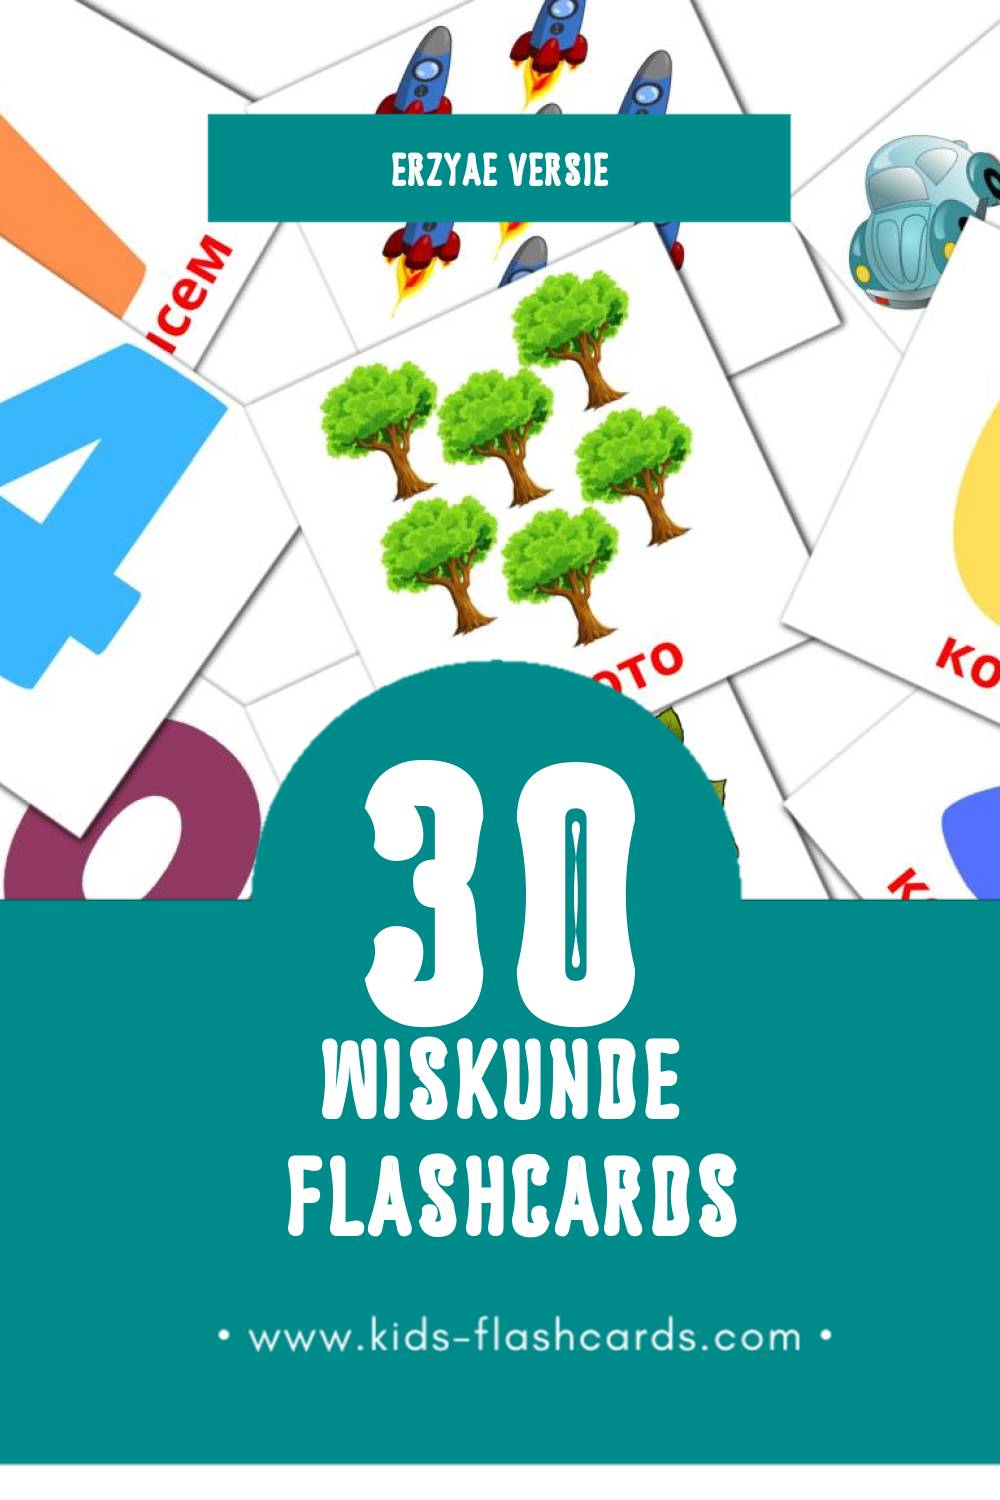 Visuele Математика Flashcards voor Kleuters (30 kaarten in het Erzya)